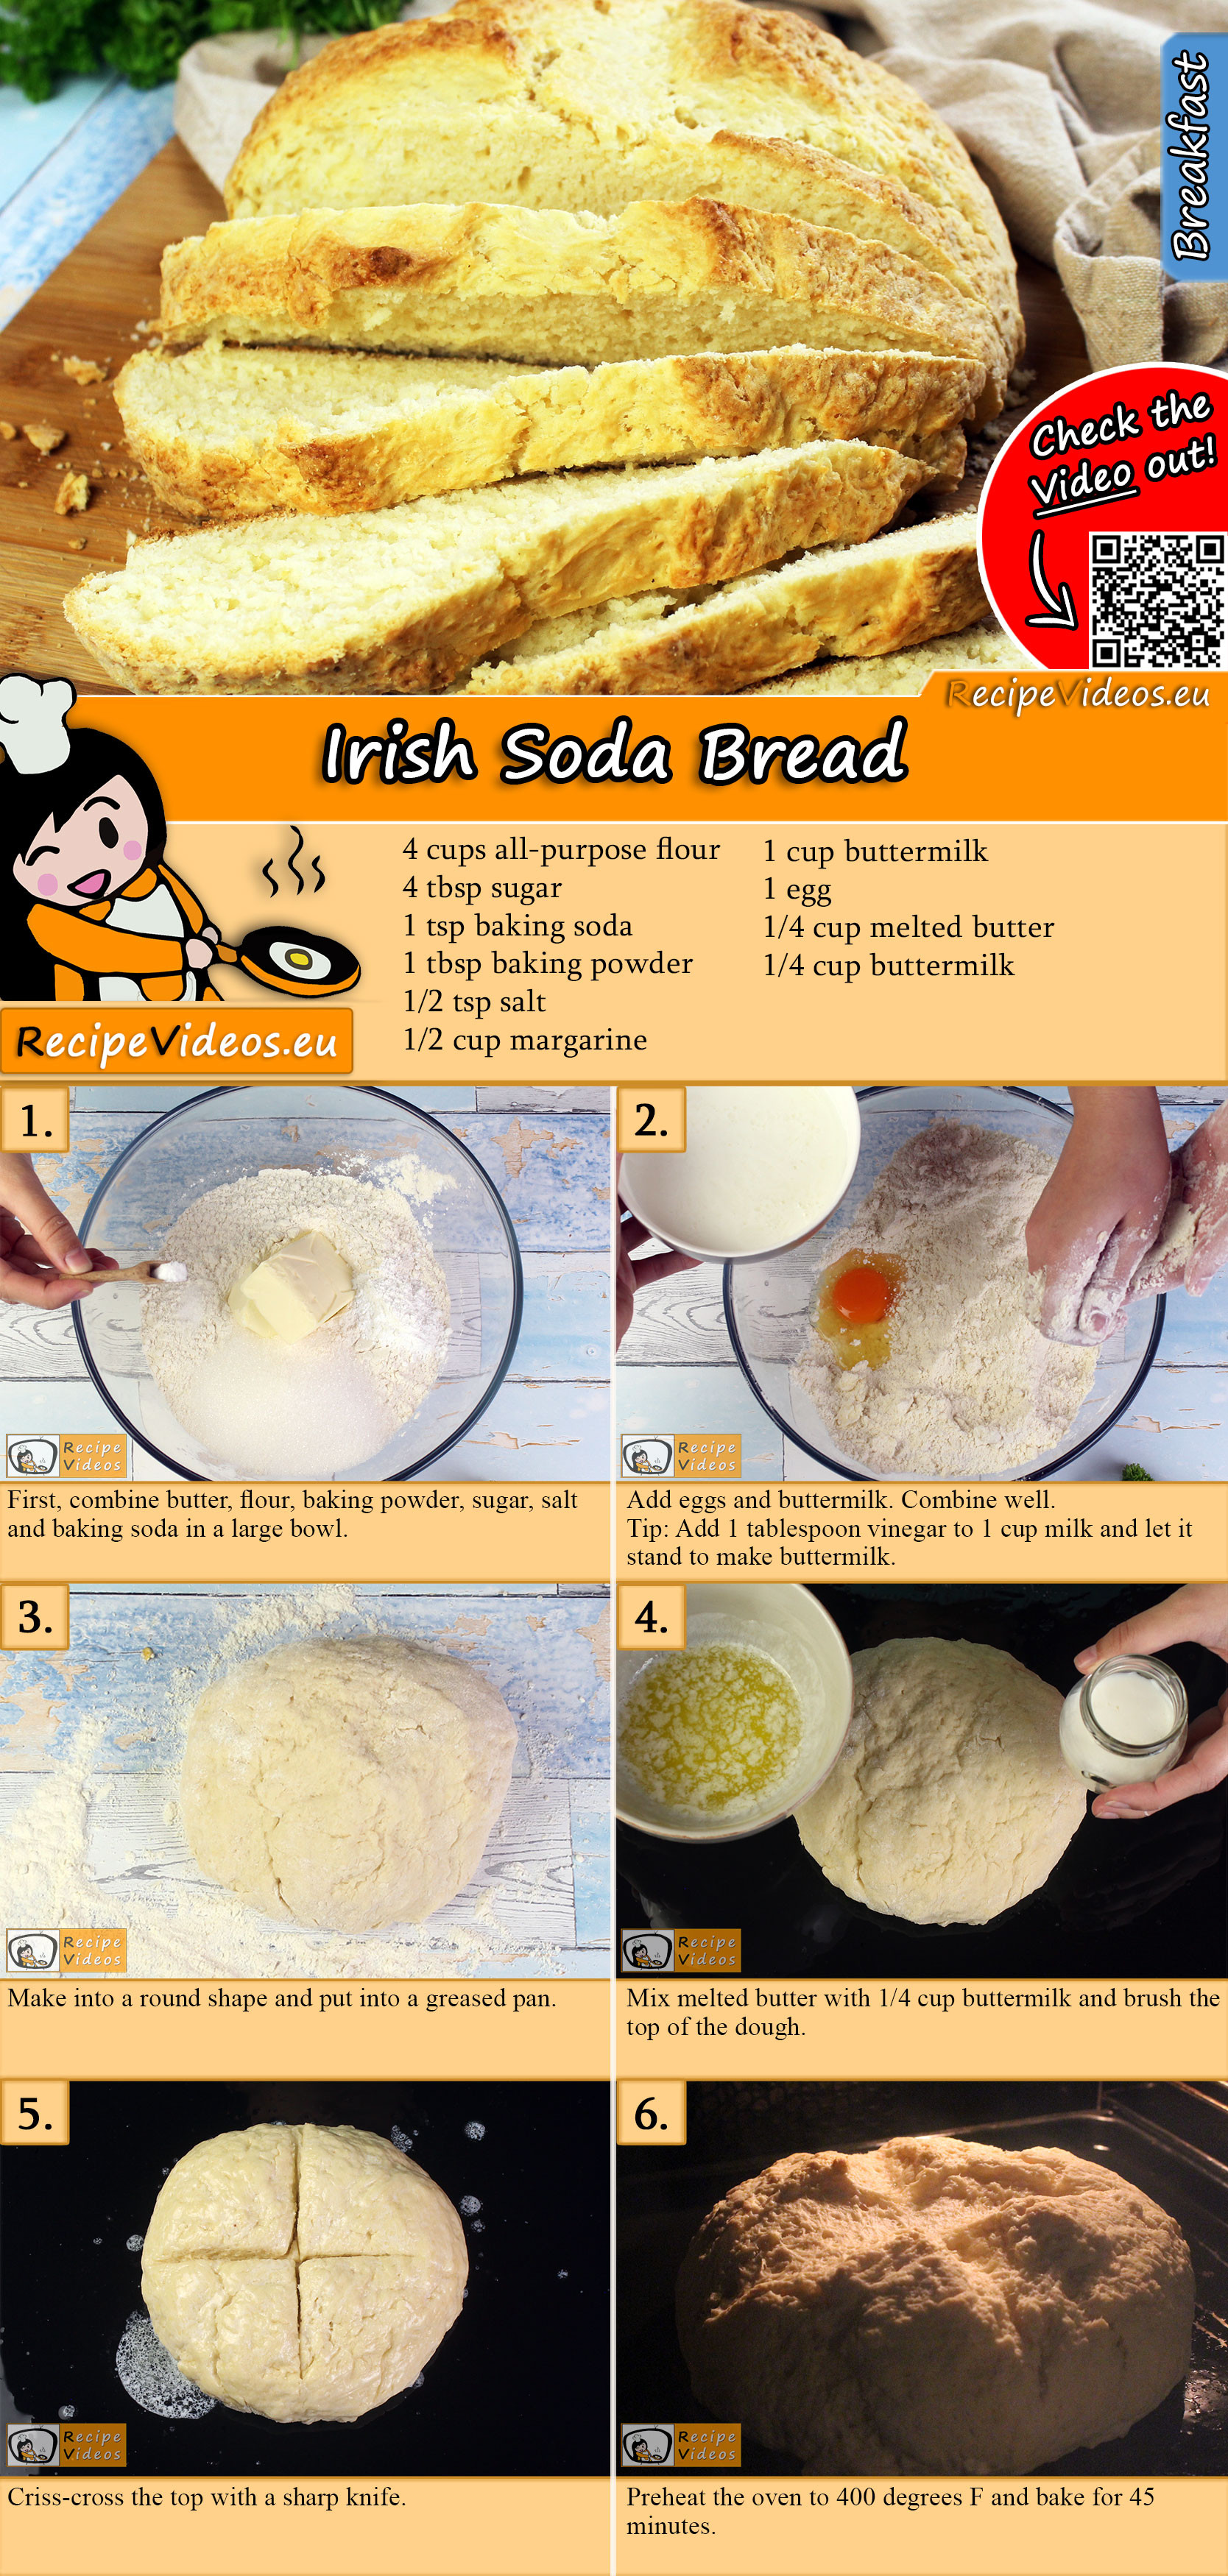 Irish Soda Bread recipe with video